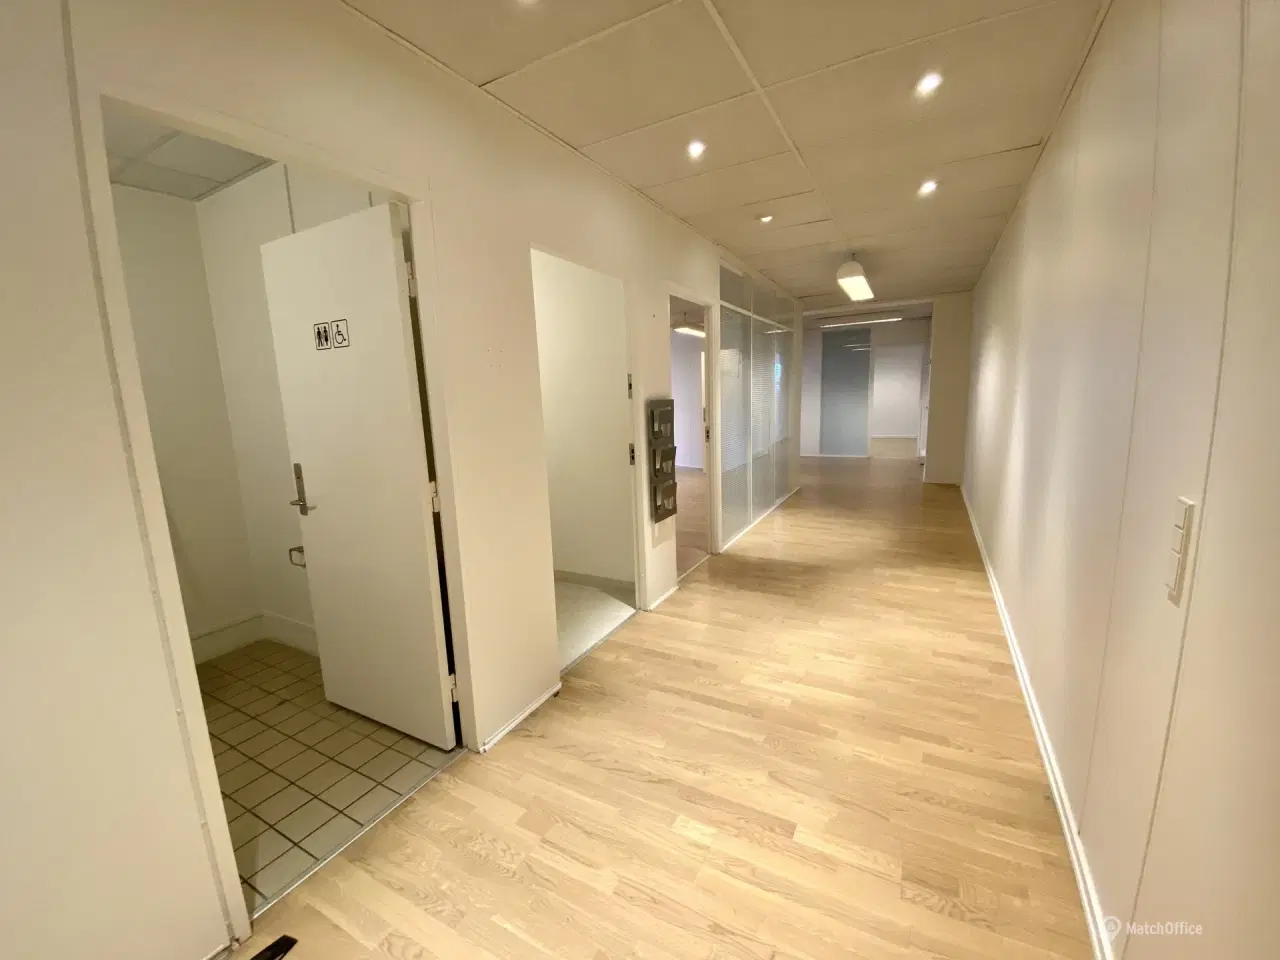 Billede 5 - 210 m² kontorlokaler udlejes i Middelfart Midtpunkt